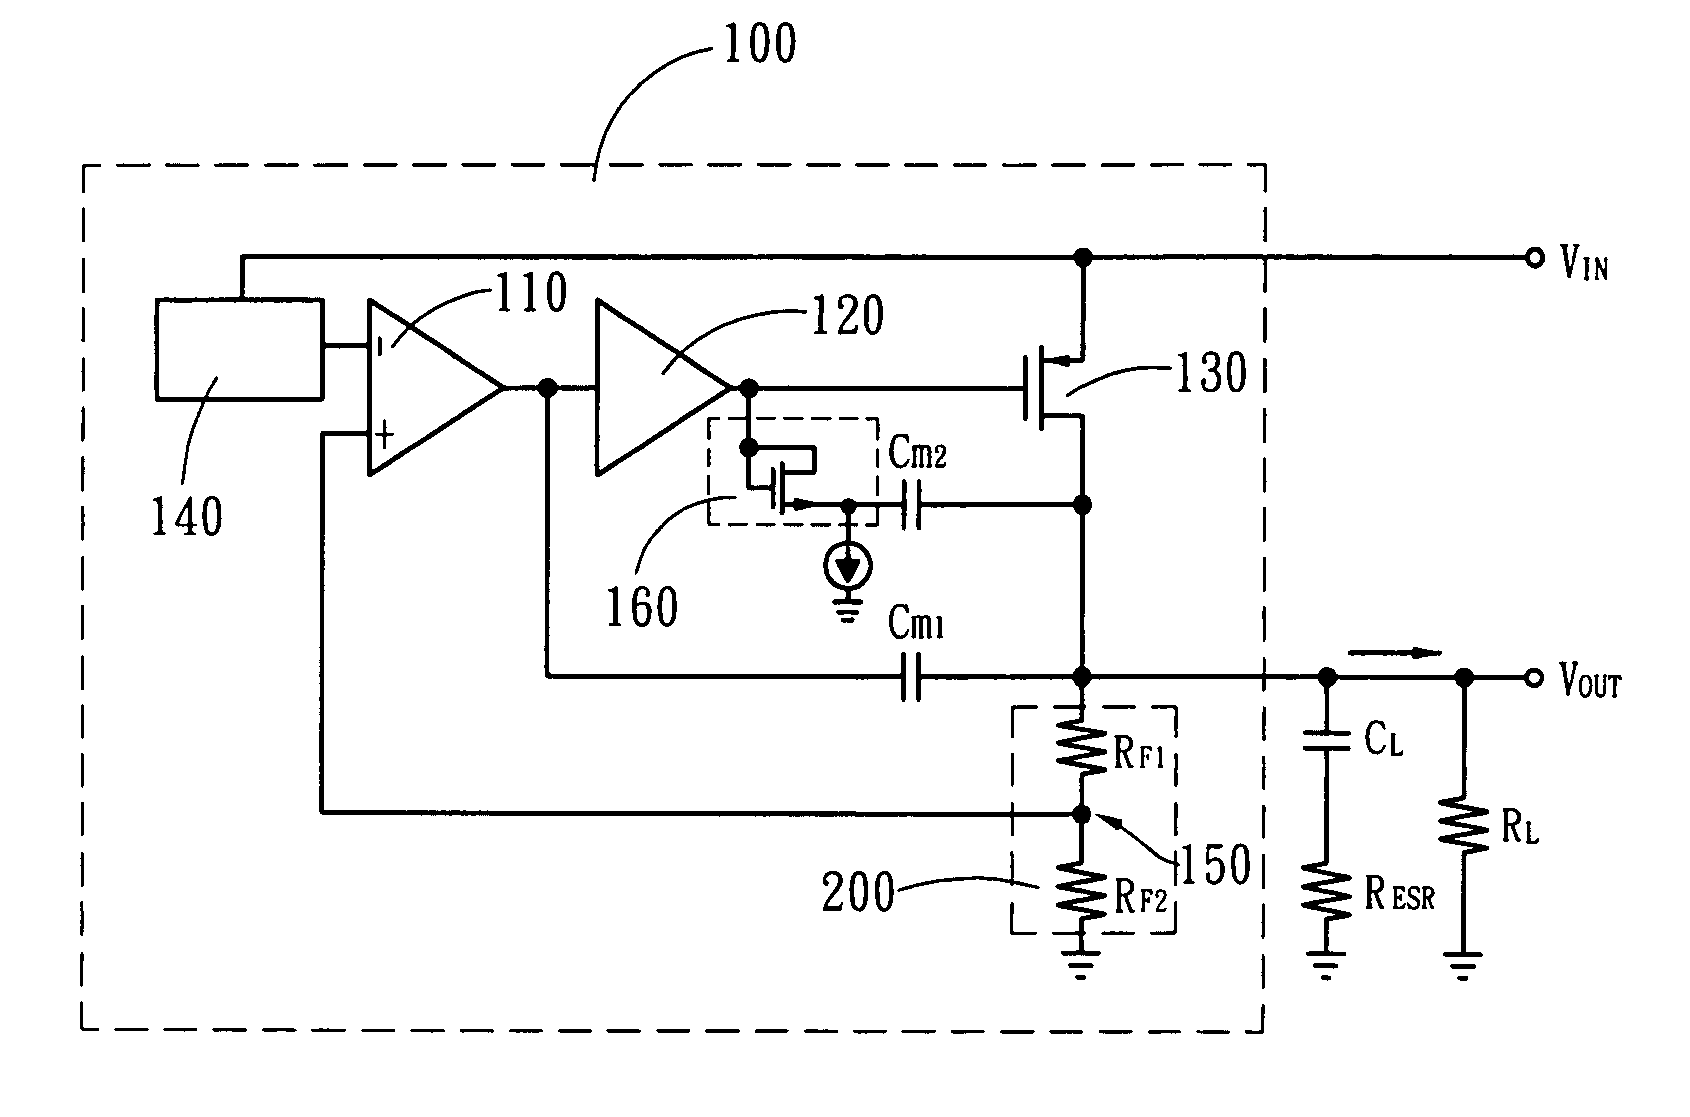 Low dropout linear voltage regulator